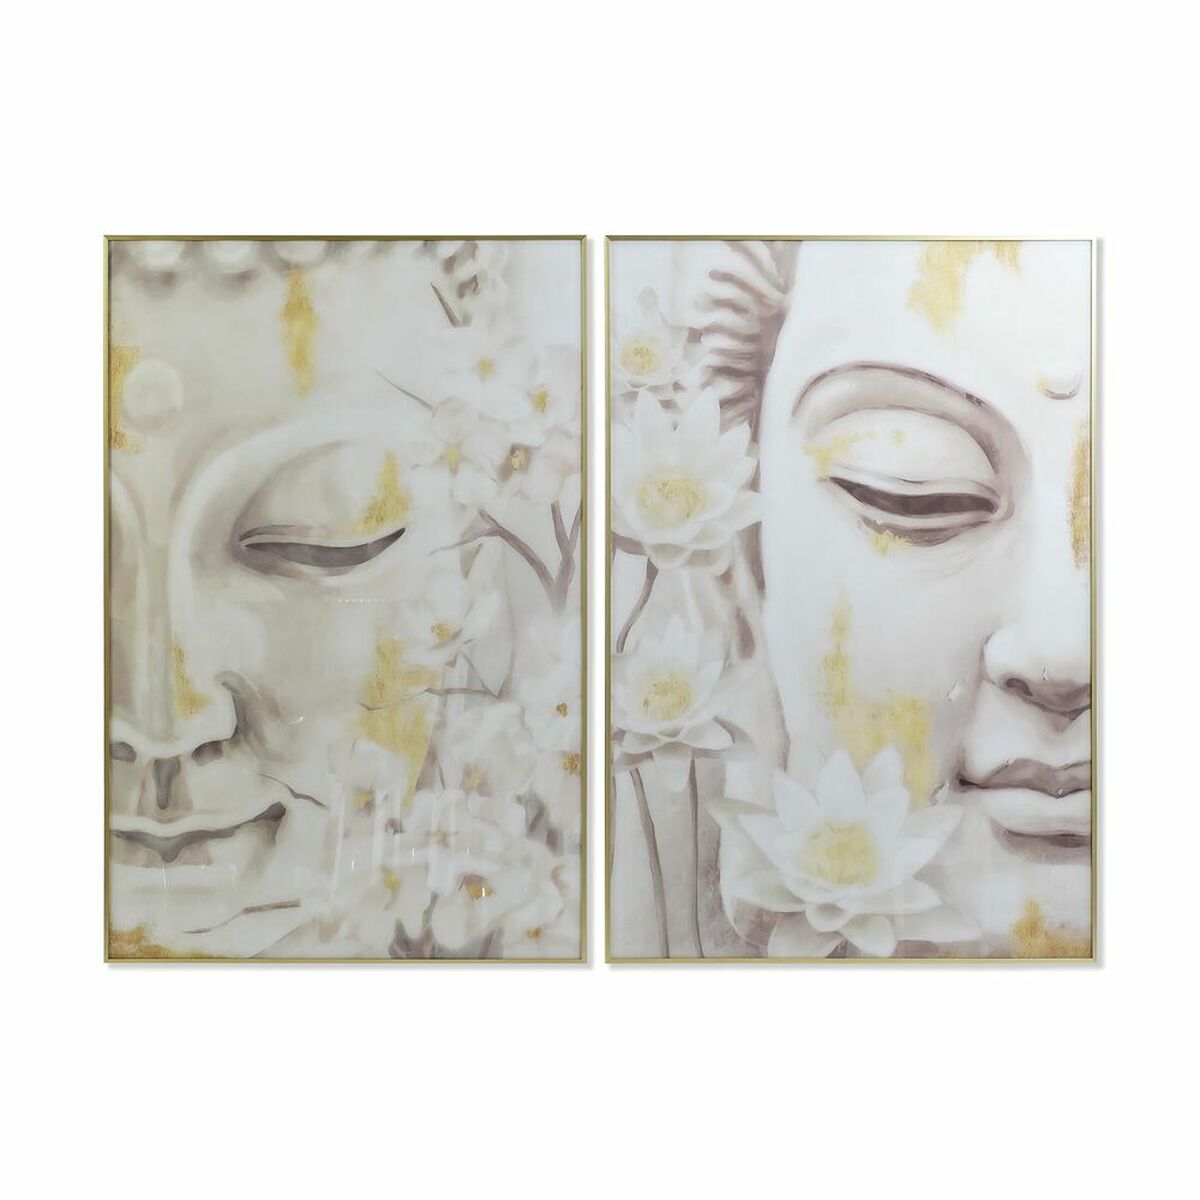 Cadres Muraux Bouddha Blanc et Doré Home Decor (80 x 4 x 120 cm) (2 Unités)